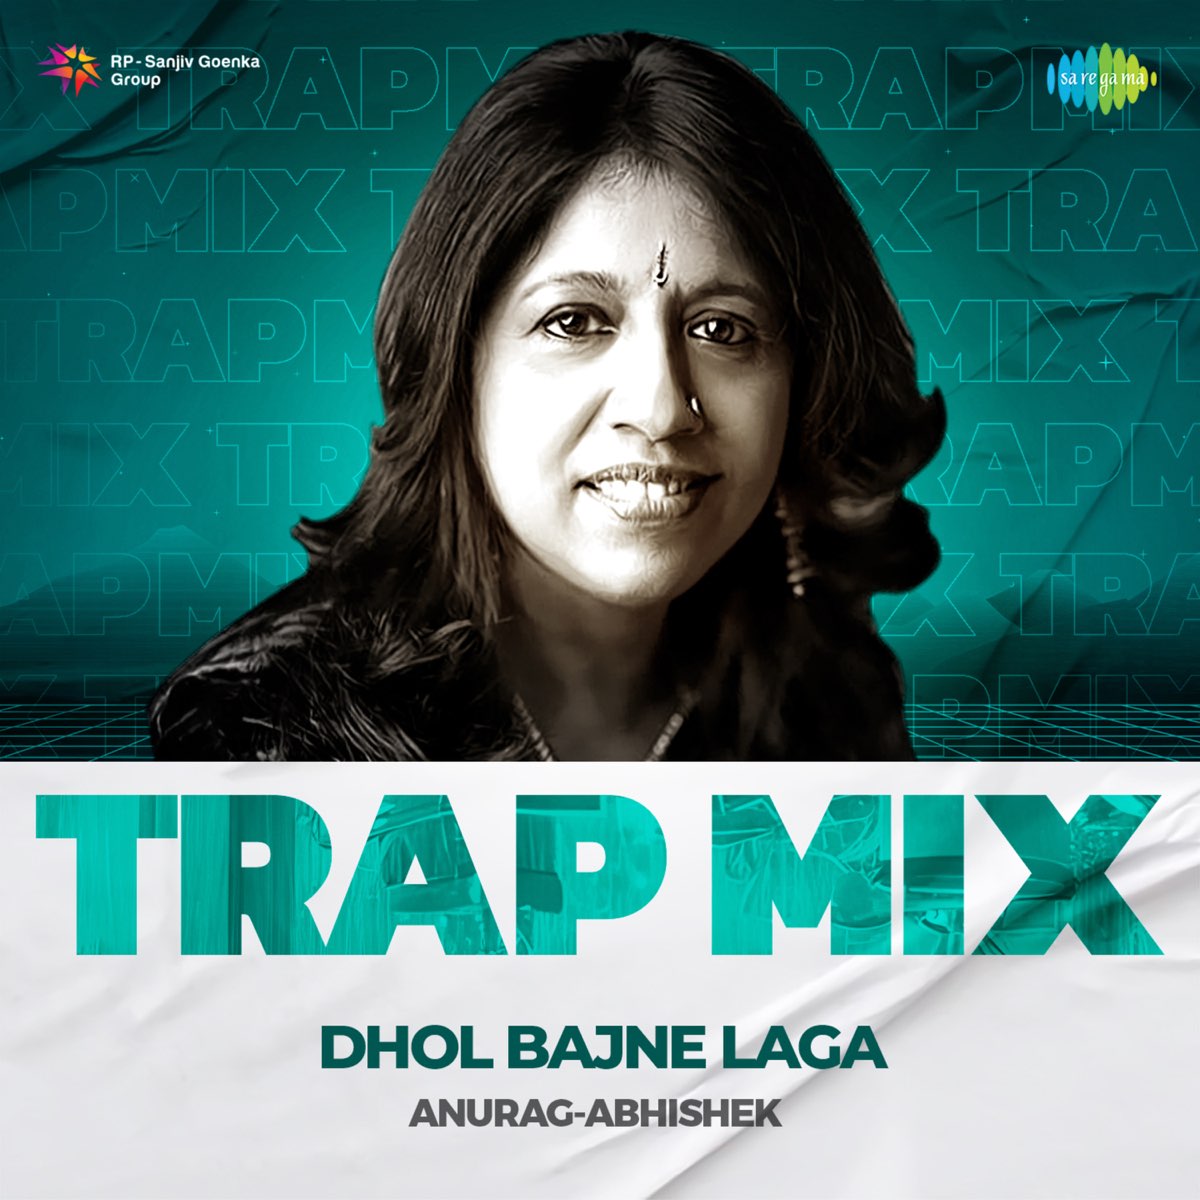 Dhol Bajne Laga (Trap Mix) - Single - Album by Kavita Krishnamurthy, Javed  Akhtar & Anu Malik - Apple Music